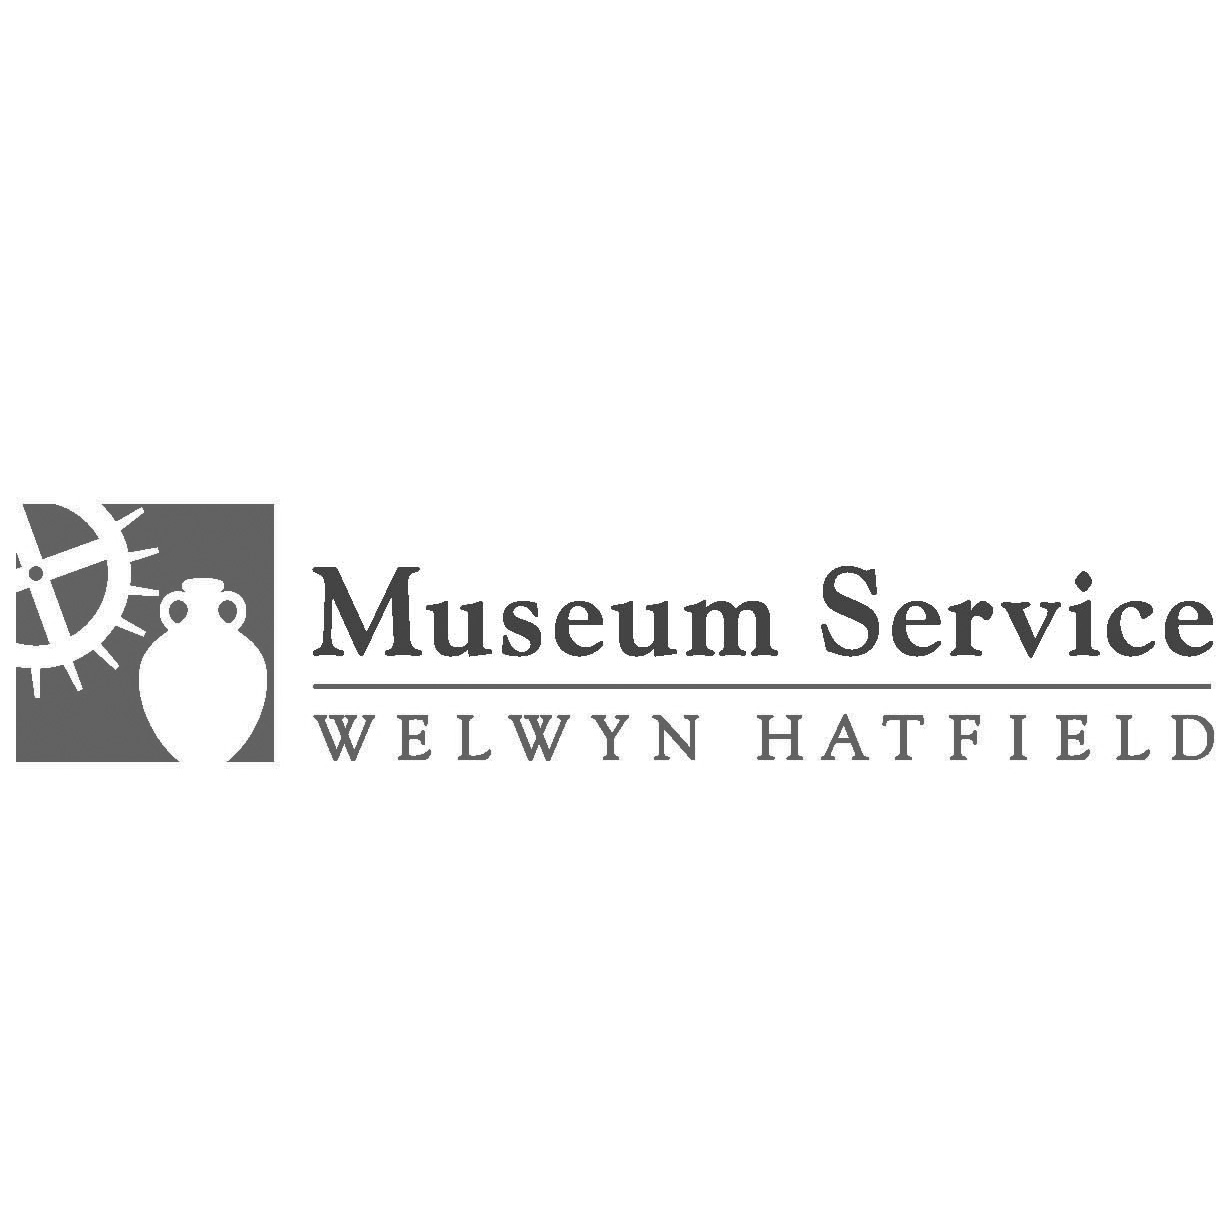 Welwyn Hatfield Museum Service